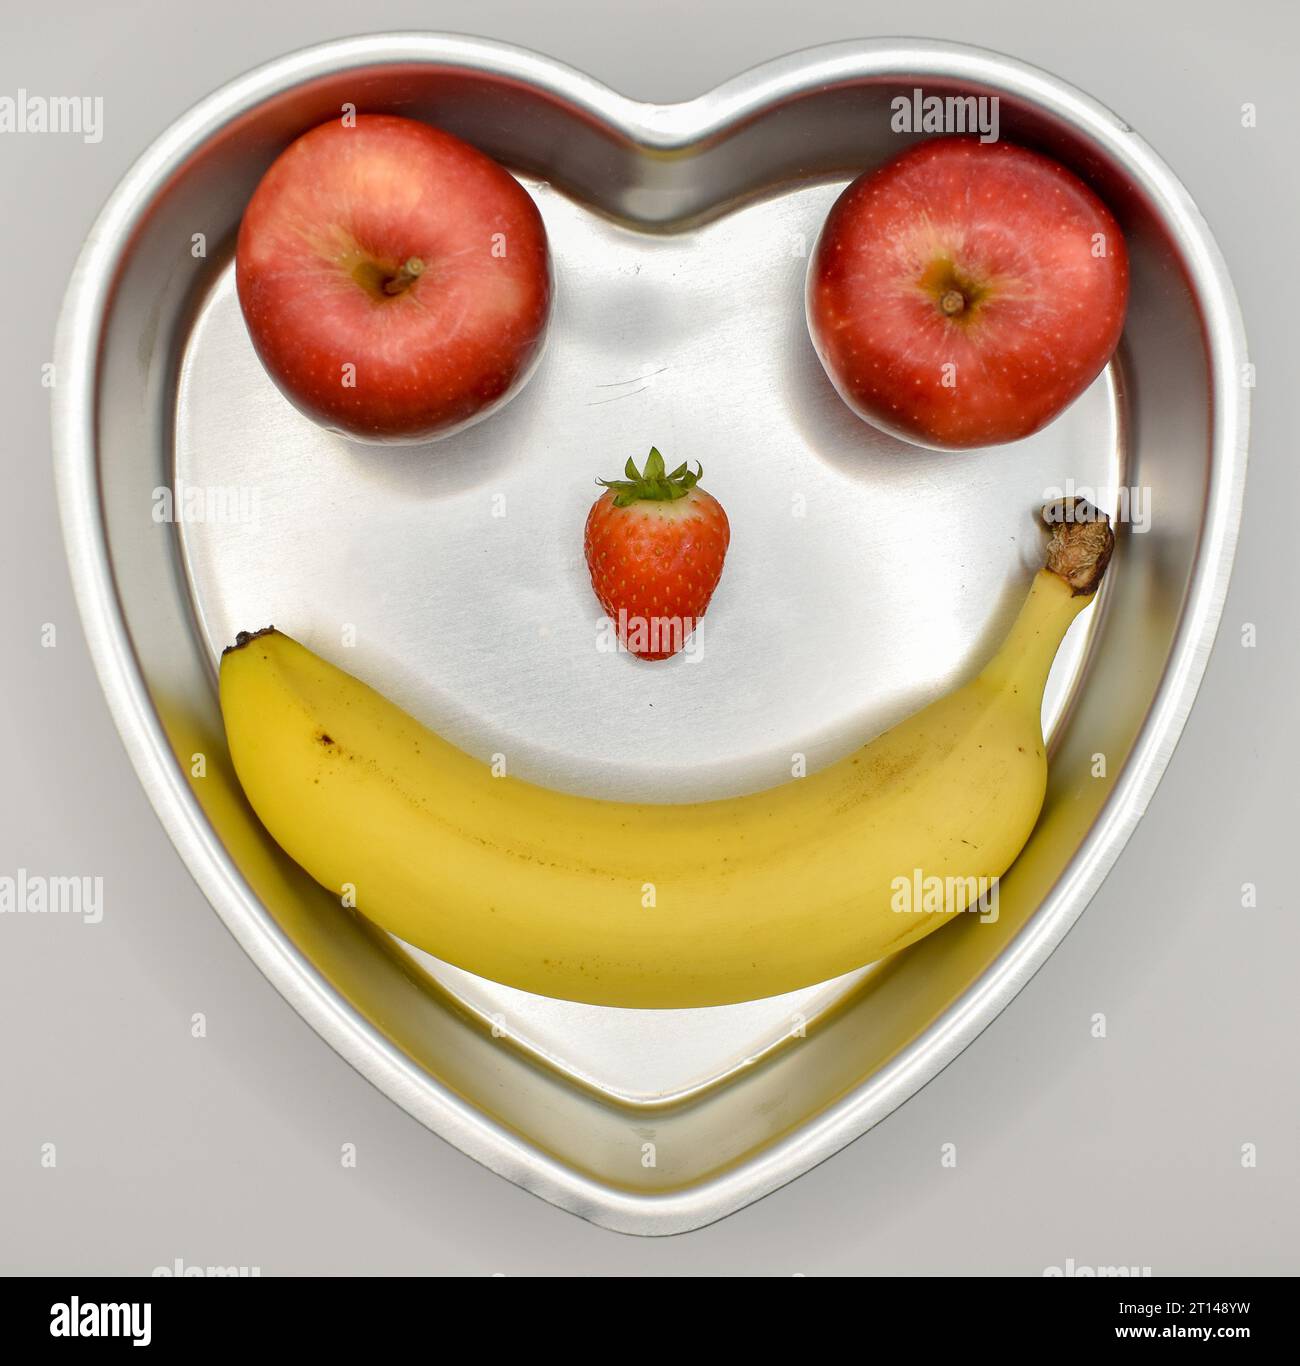 Mangez sainement, une boîte en forme de cœur avec deux pommes, une fraise et une banane disposées pour faire un visage souriant. Banque D'Images